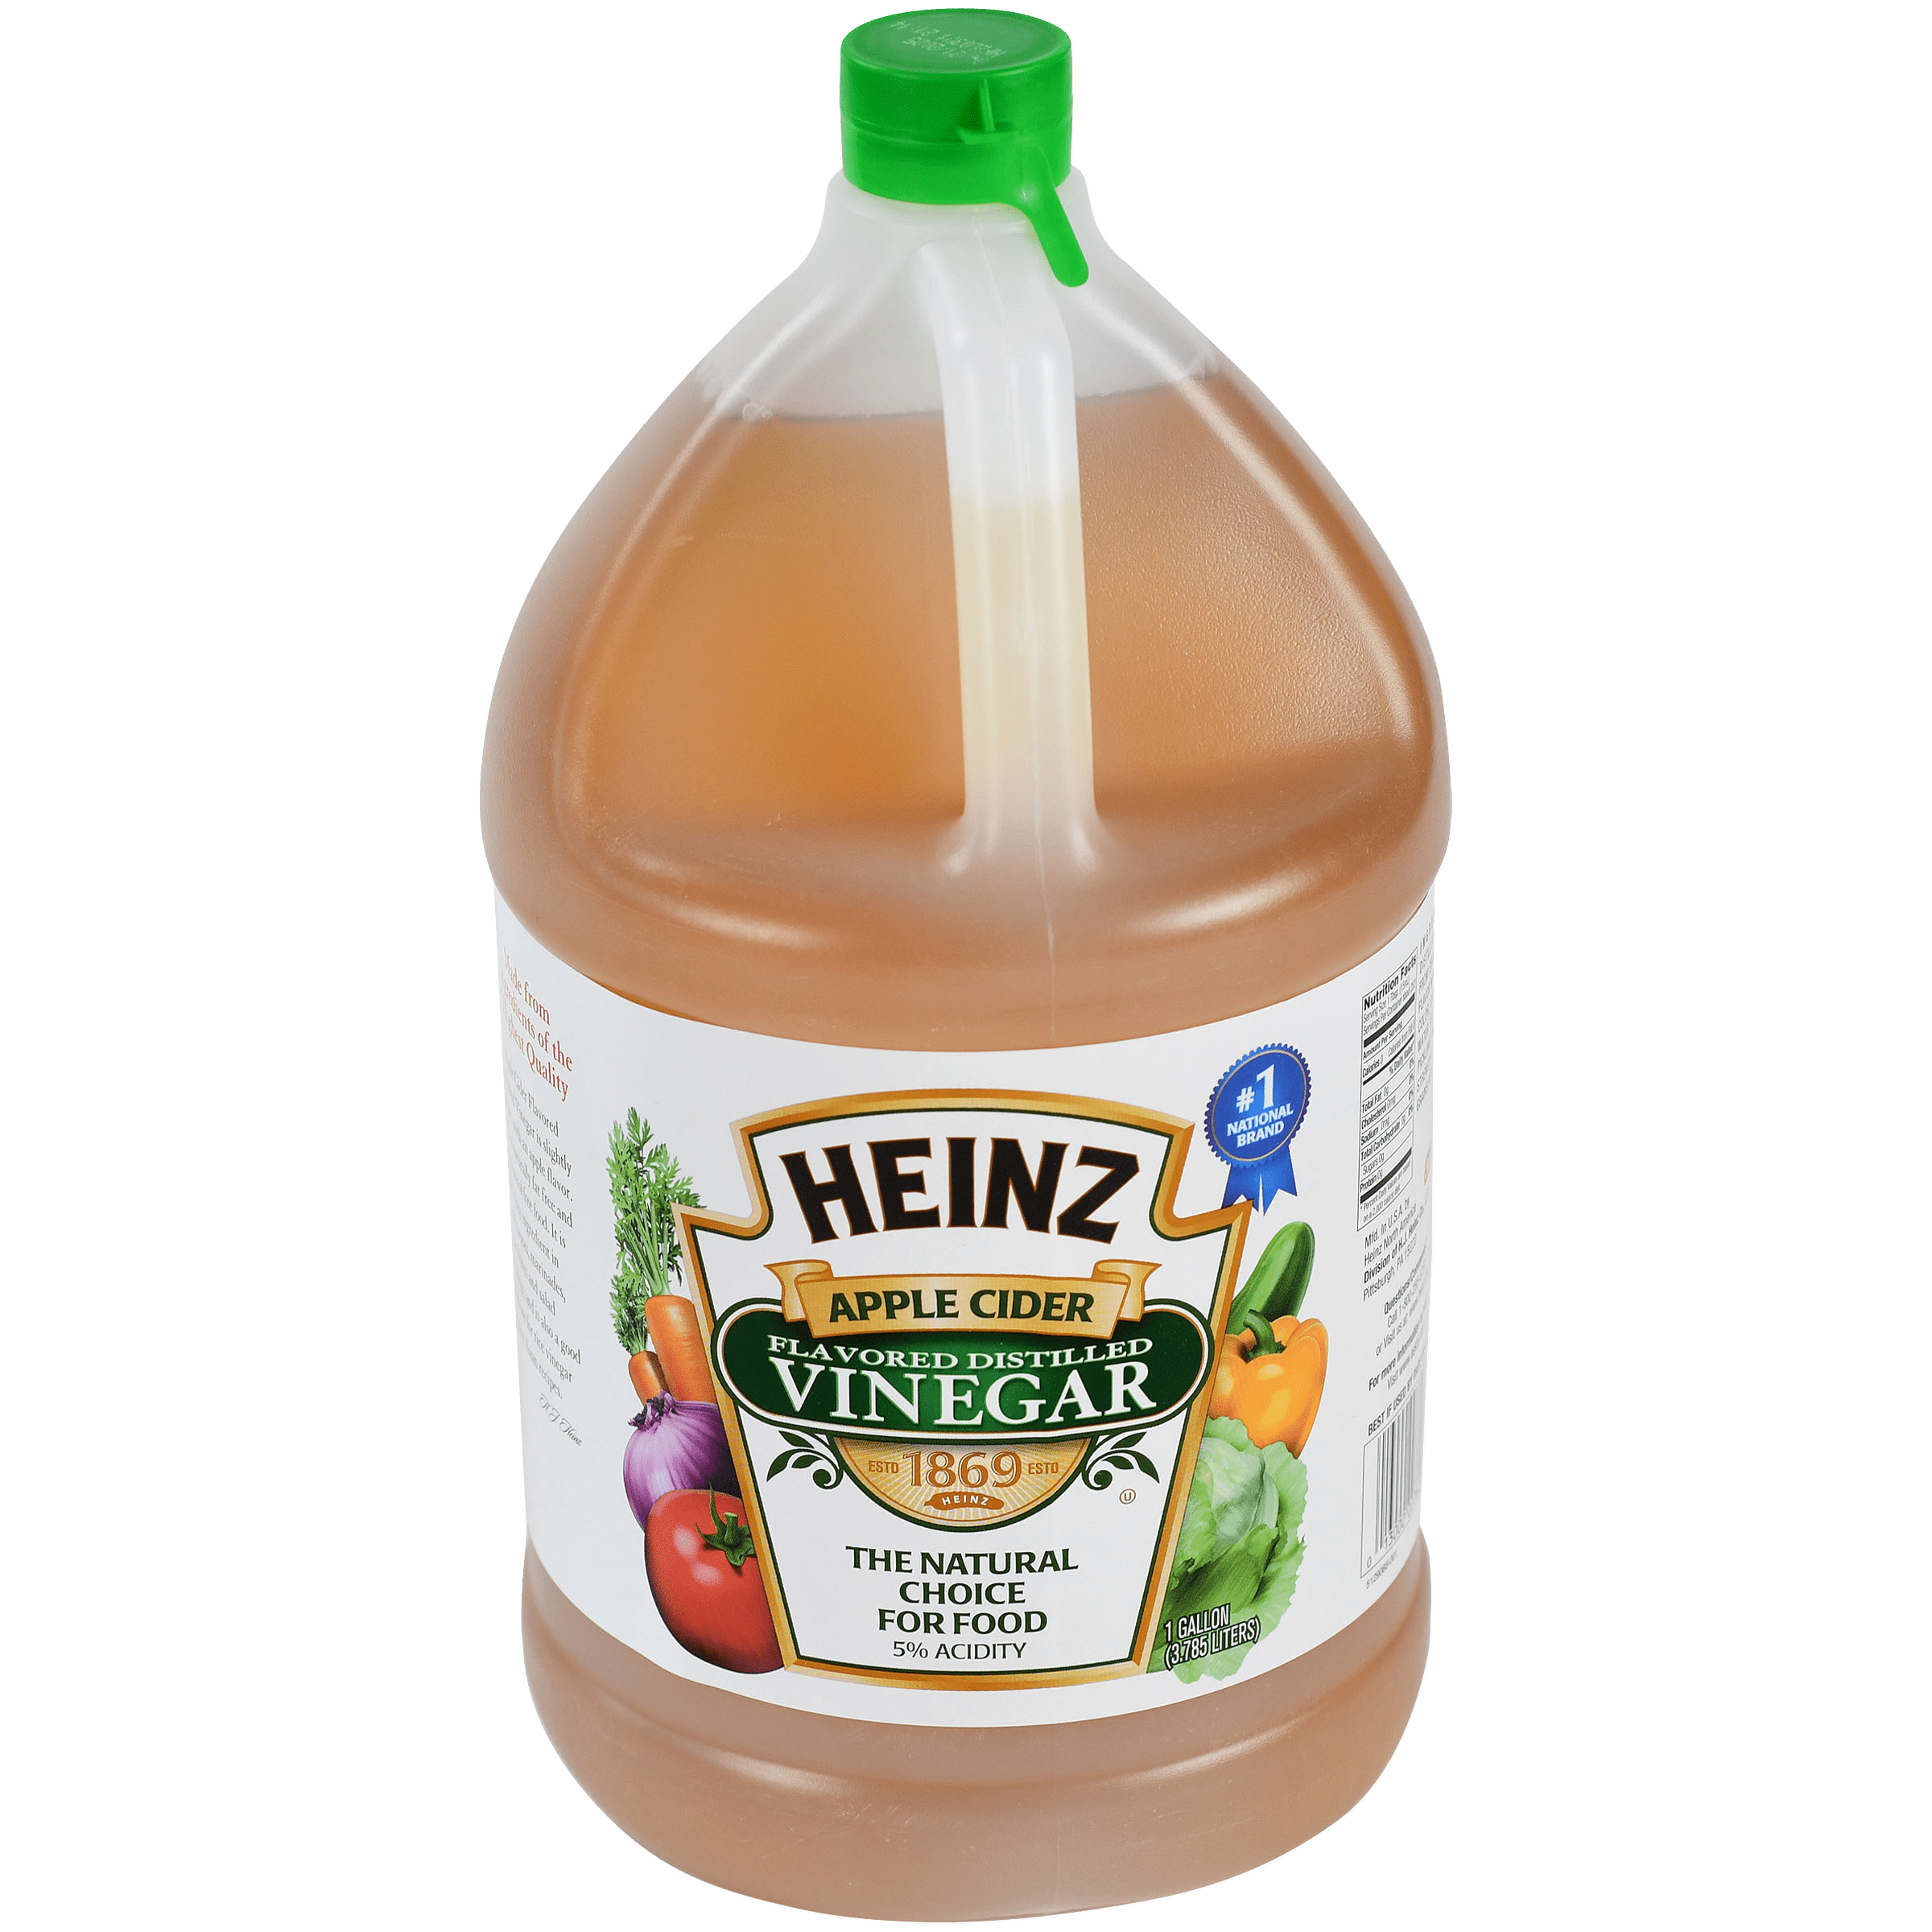 Apple Cider Flavored Distilled Vinegar